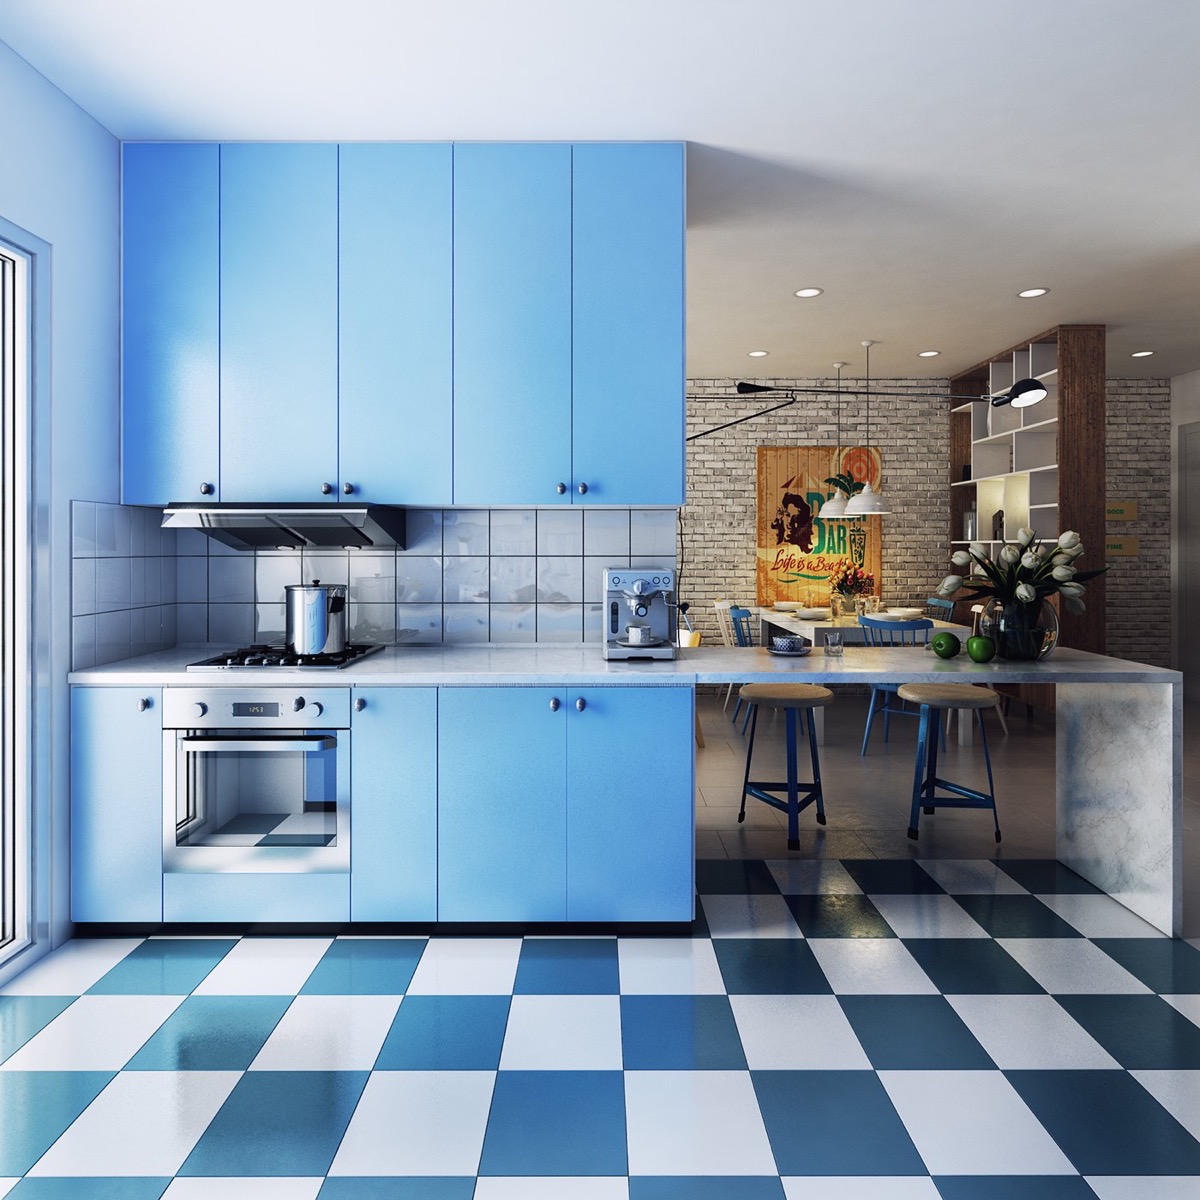 Gạch lát sàn kẻ ô màu xanh dương, trắng tạo nên sự bổ sung tuyệt vời cho thiết kế nhà bếp màu xanh. 